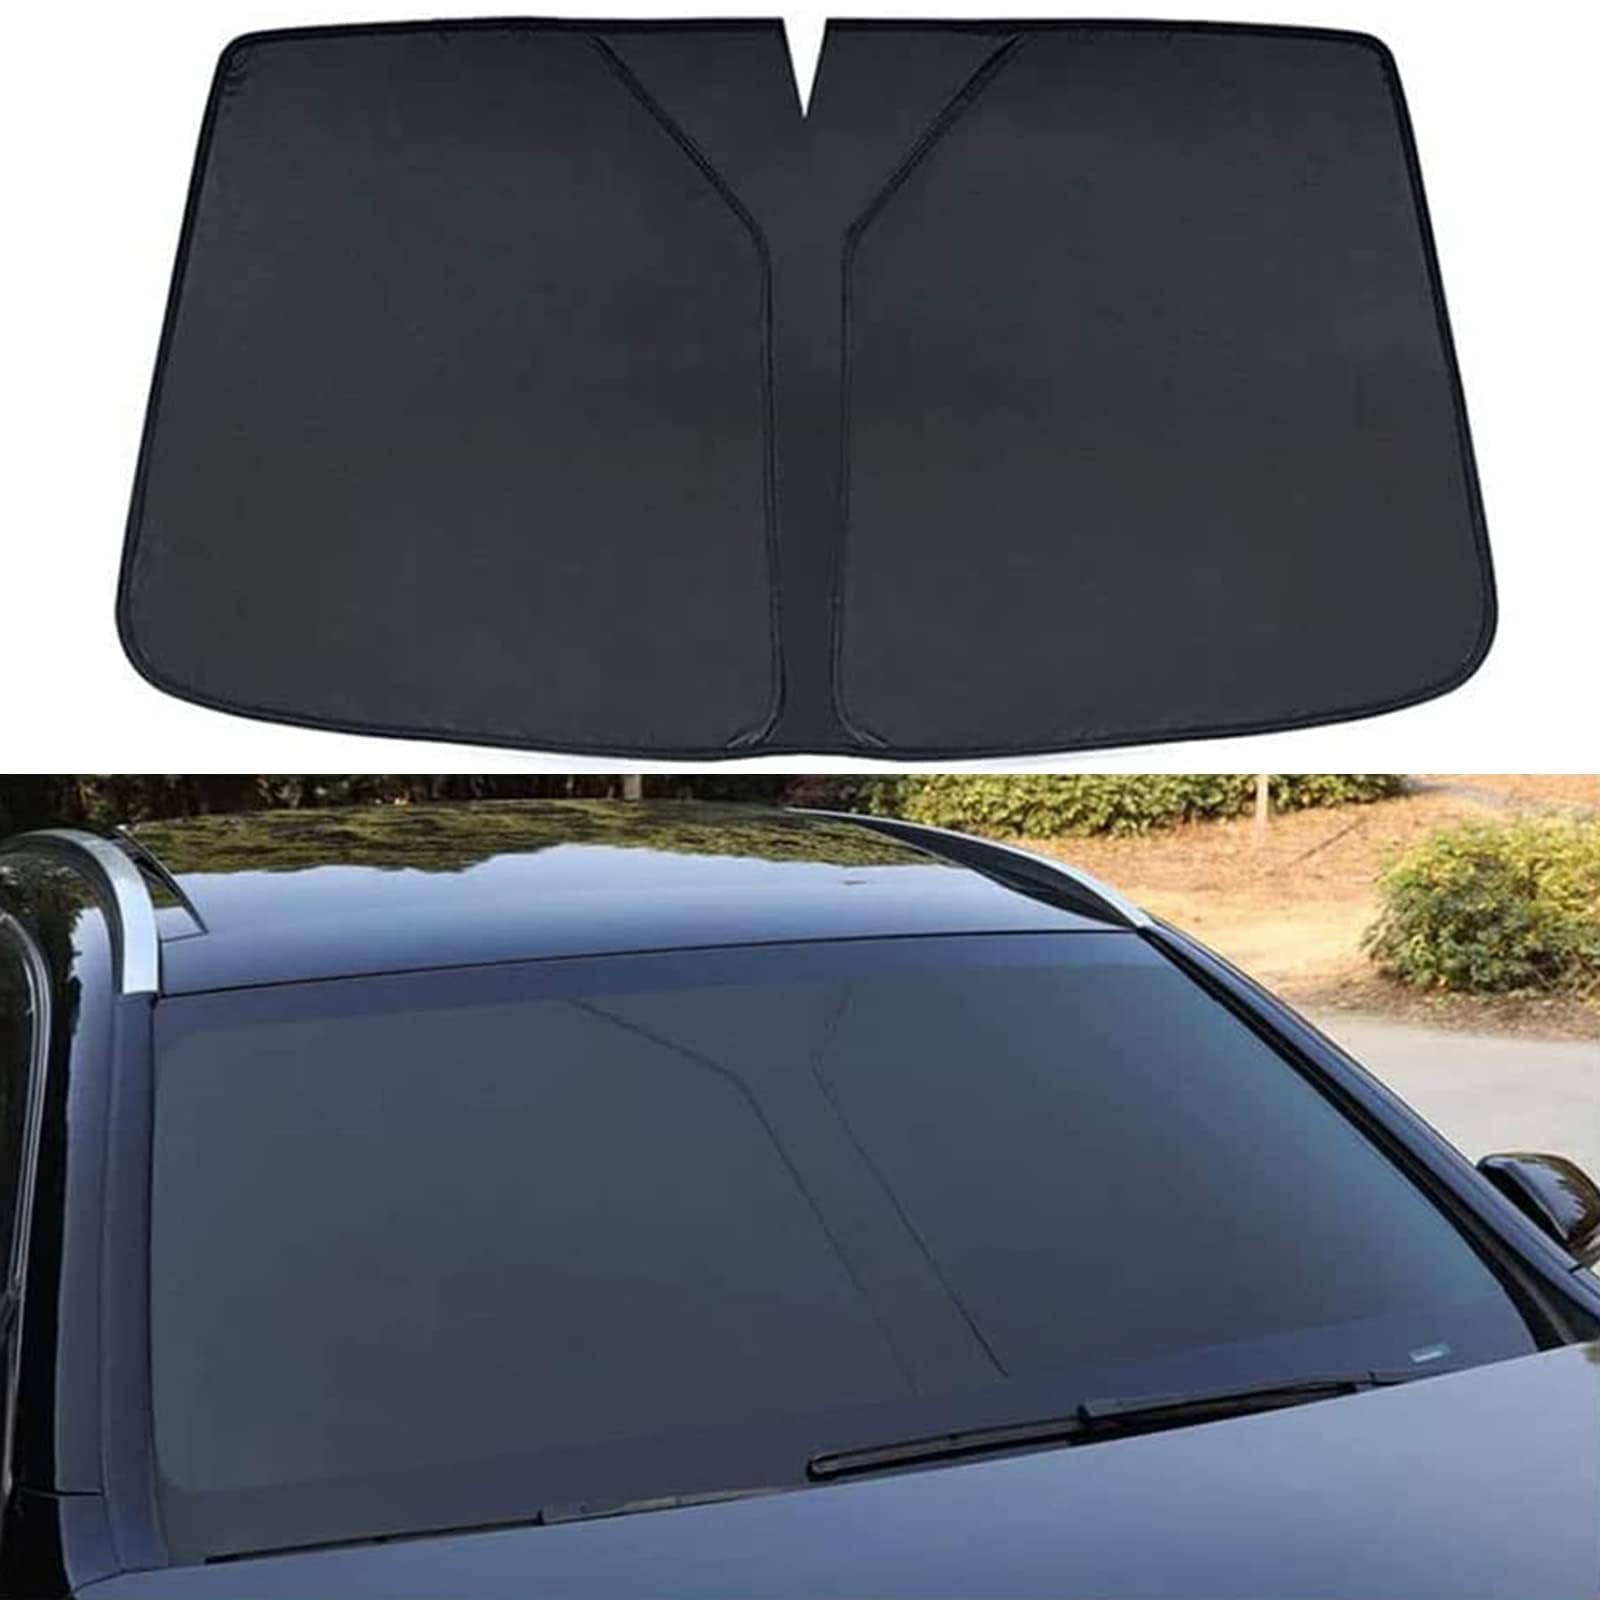 Auto Windschutzscheibe Sonnenschutz für Volvo S80L,Verdunkelung Faltbar und Tragbar Wärmeisolierung Windschutzscheiben-Innenzubehör,Black von MUGONGWEI